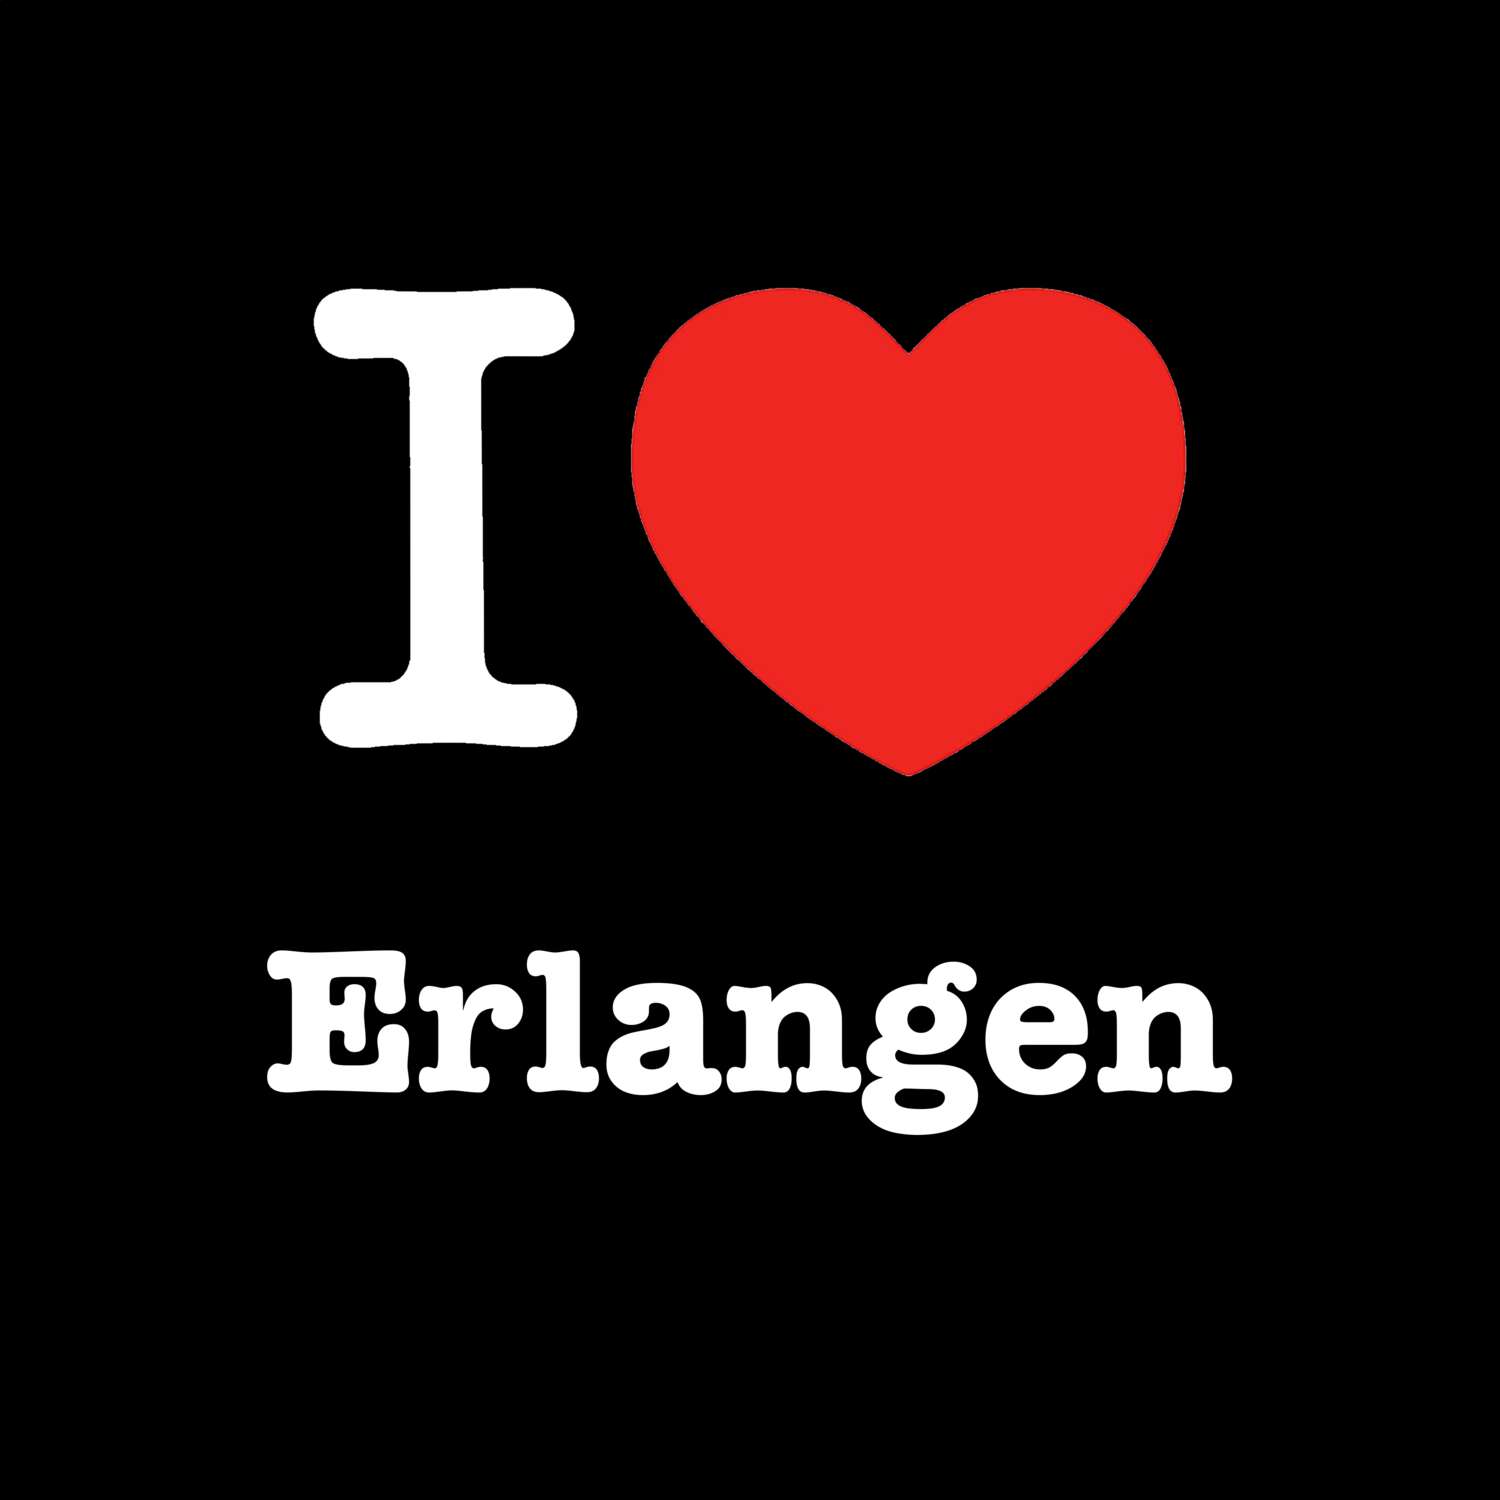 Erlangen T-Shirt »I love«